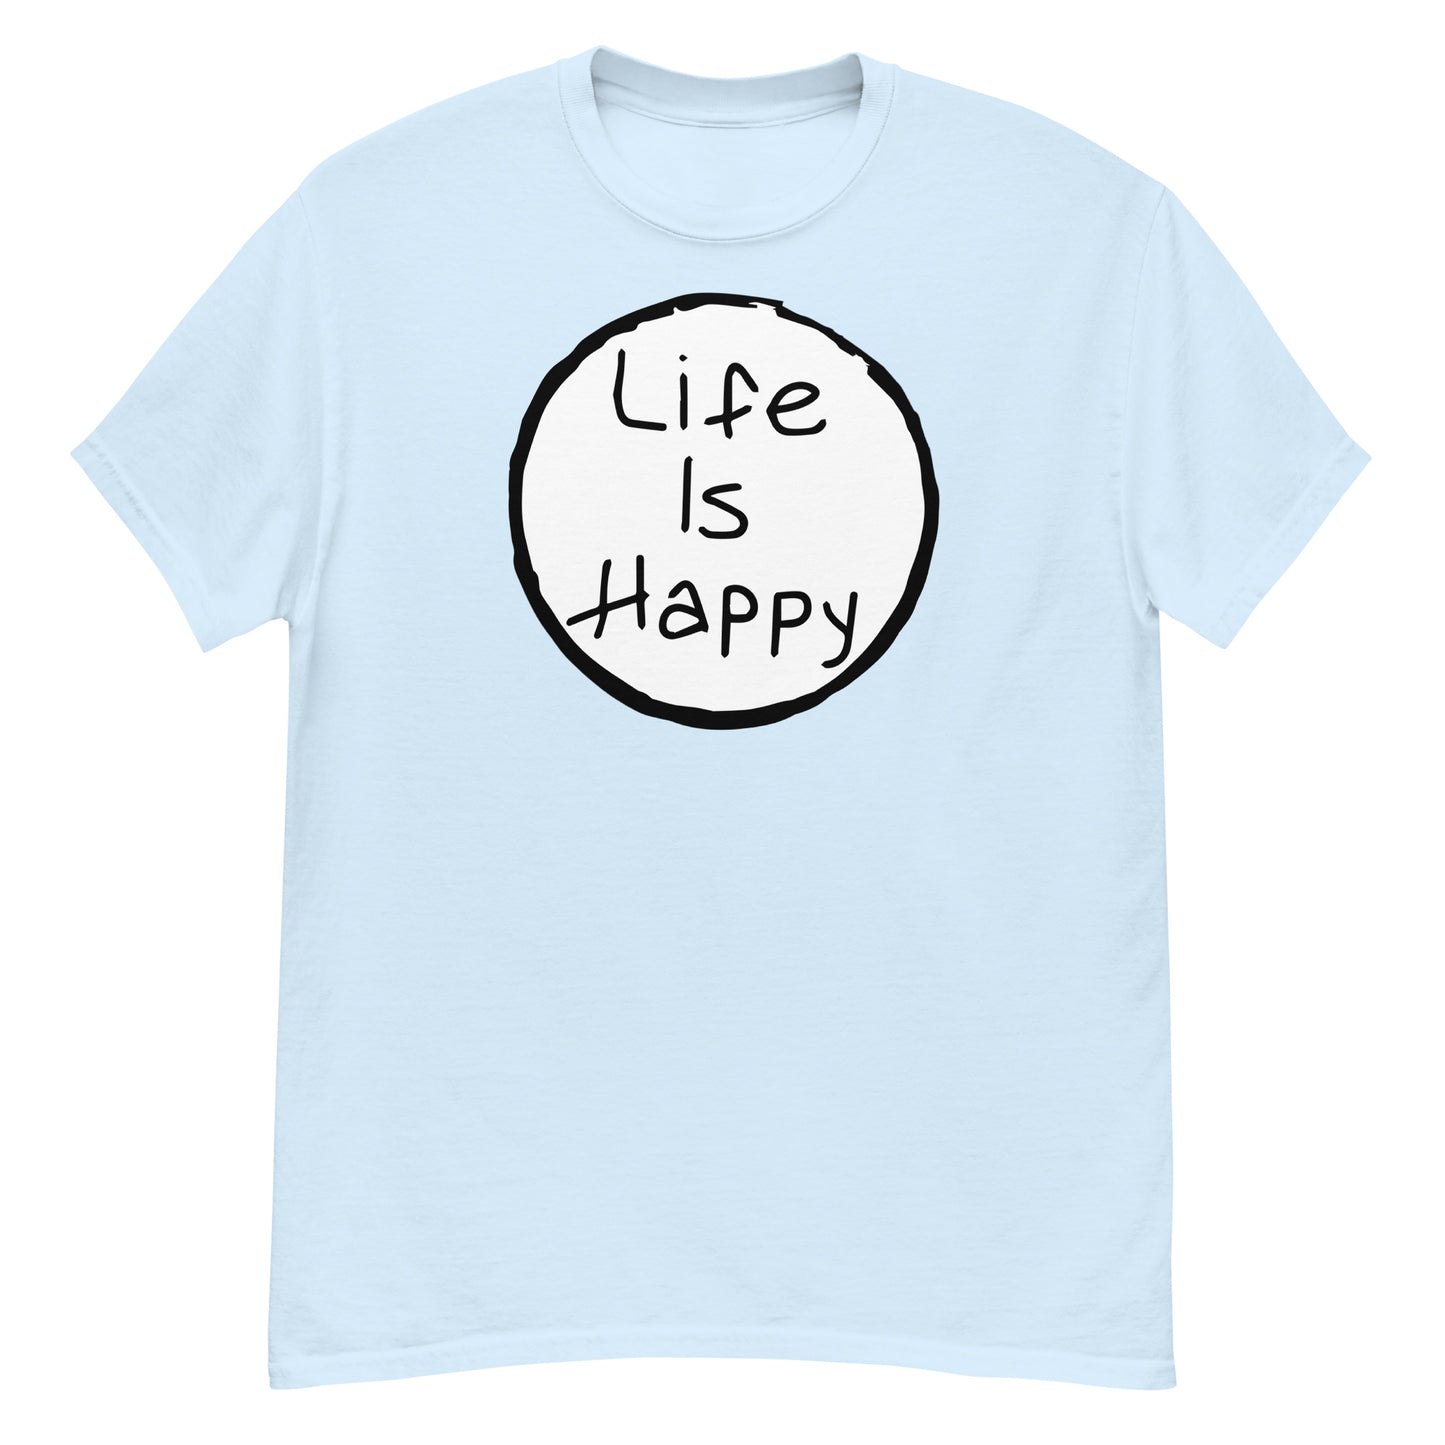 Life is Happy classic tee